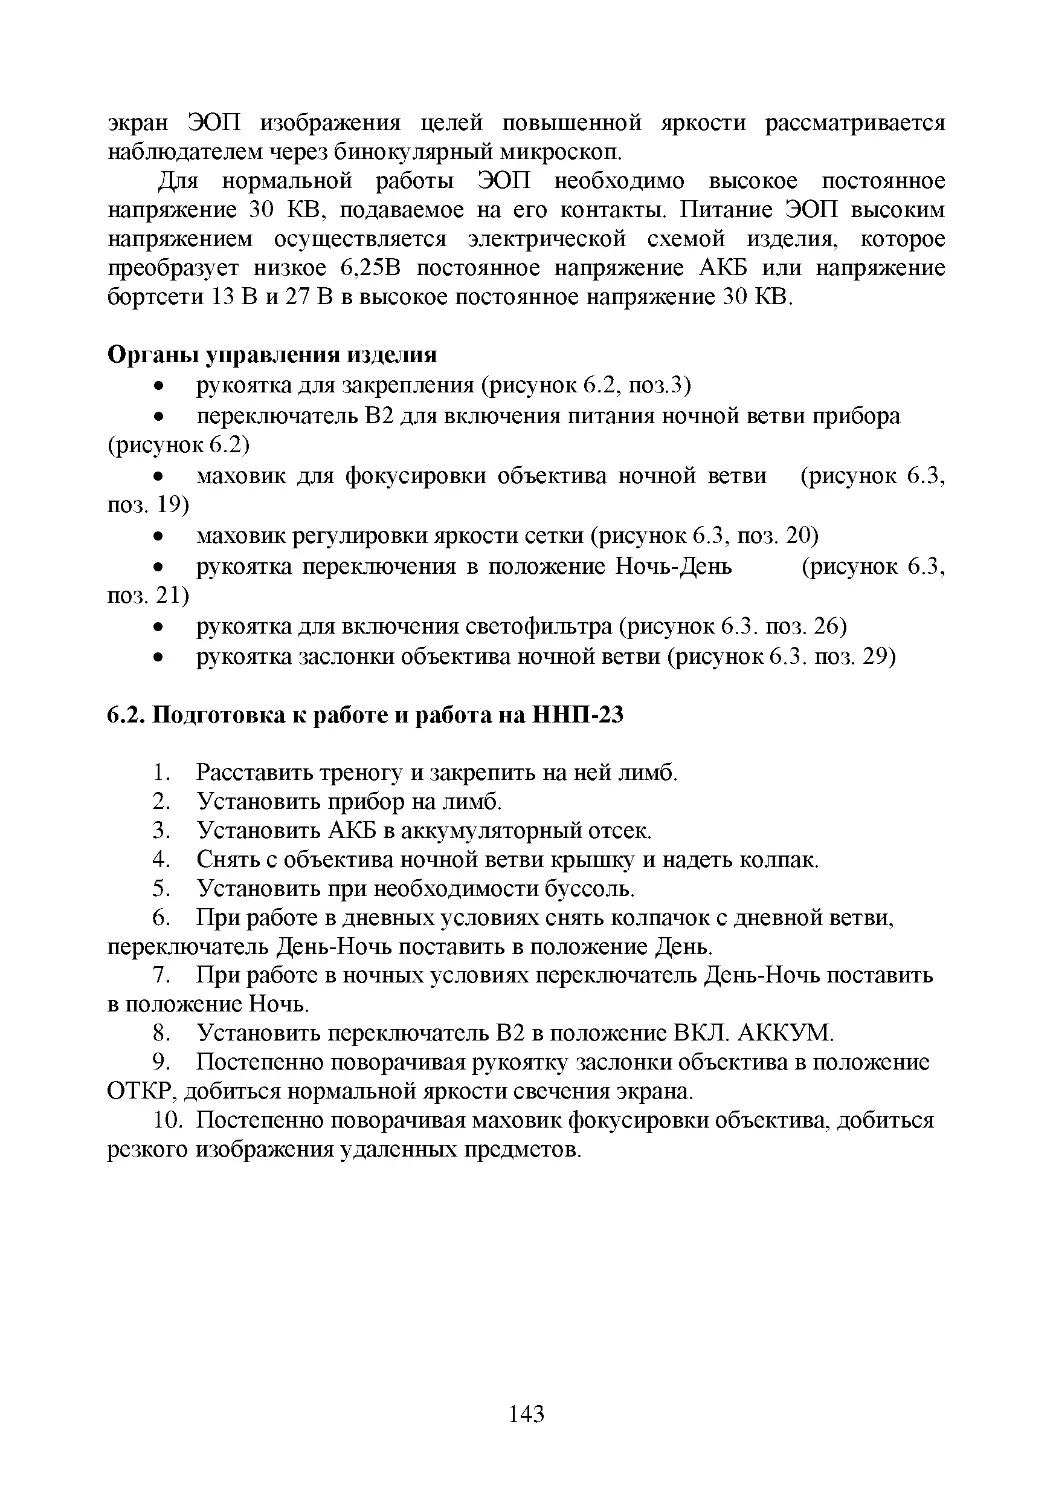 Органы управления изделия
6.2. Подготовка к работе и работа на ННП-23